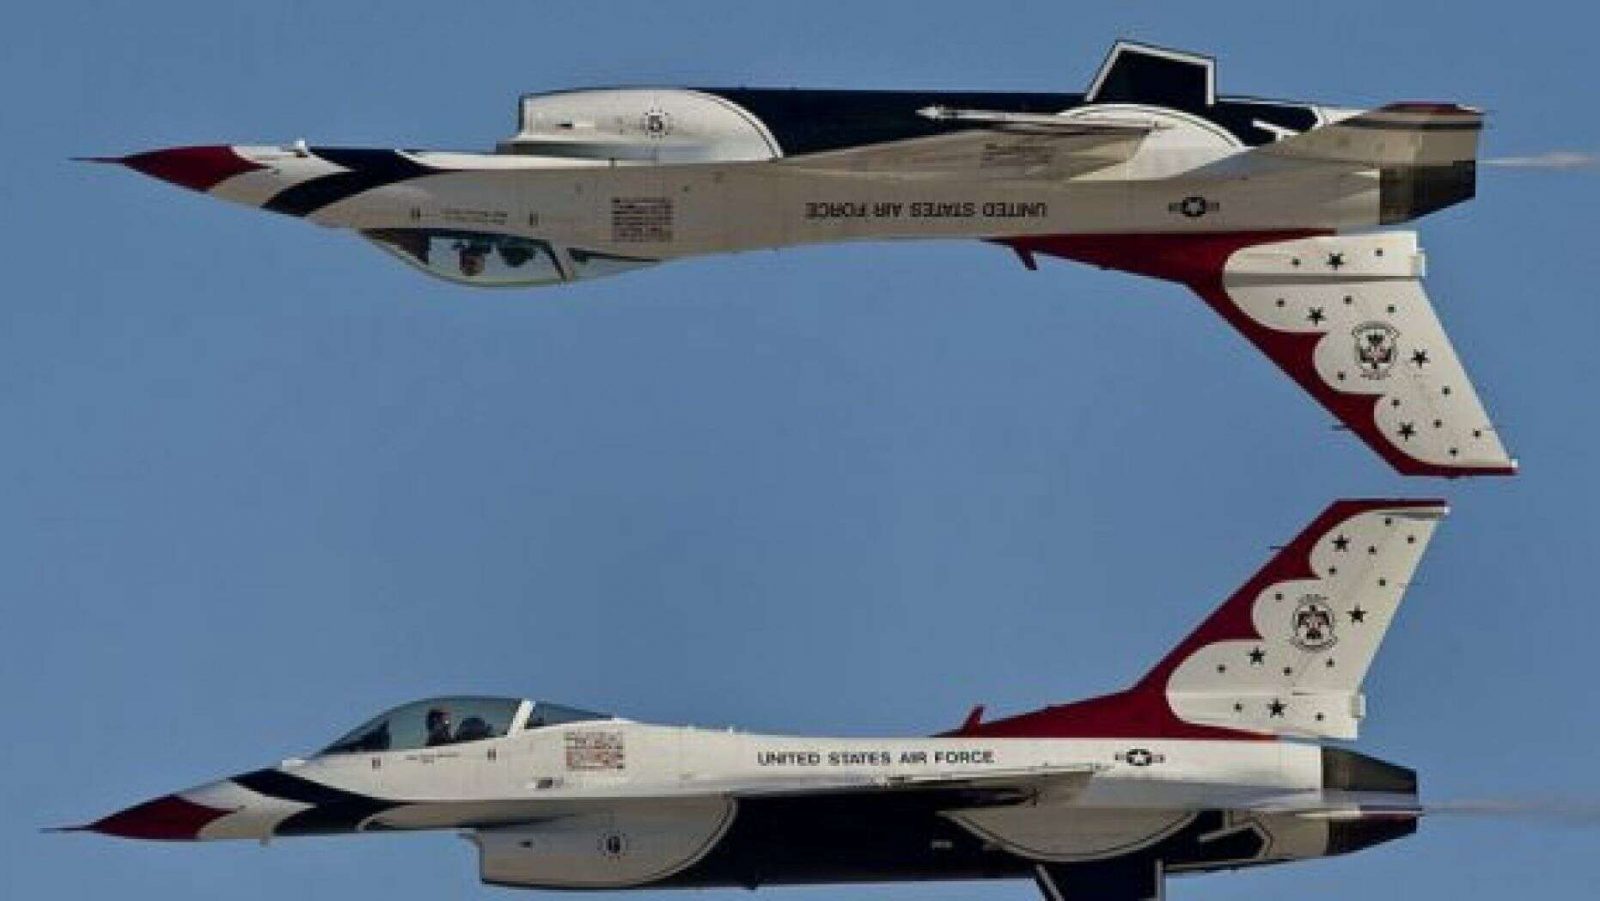 Comparison of Flight Demonstration Teams; Blue Angels VS Thunderbirds